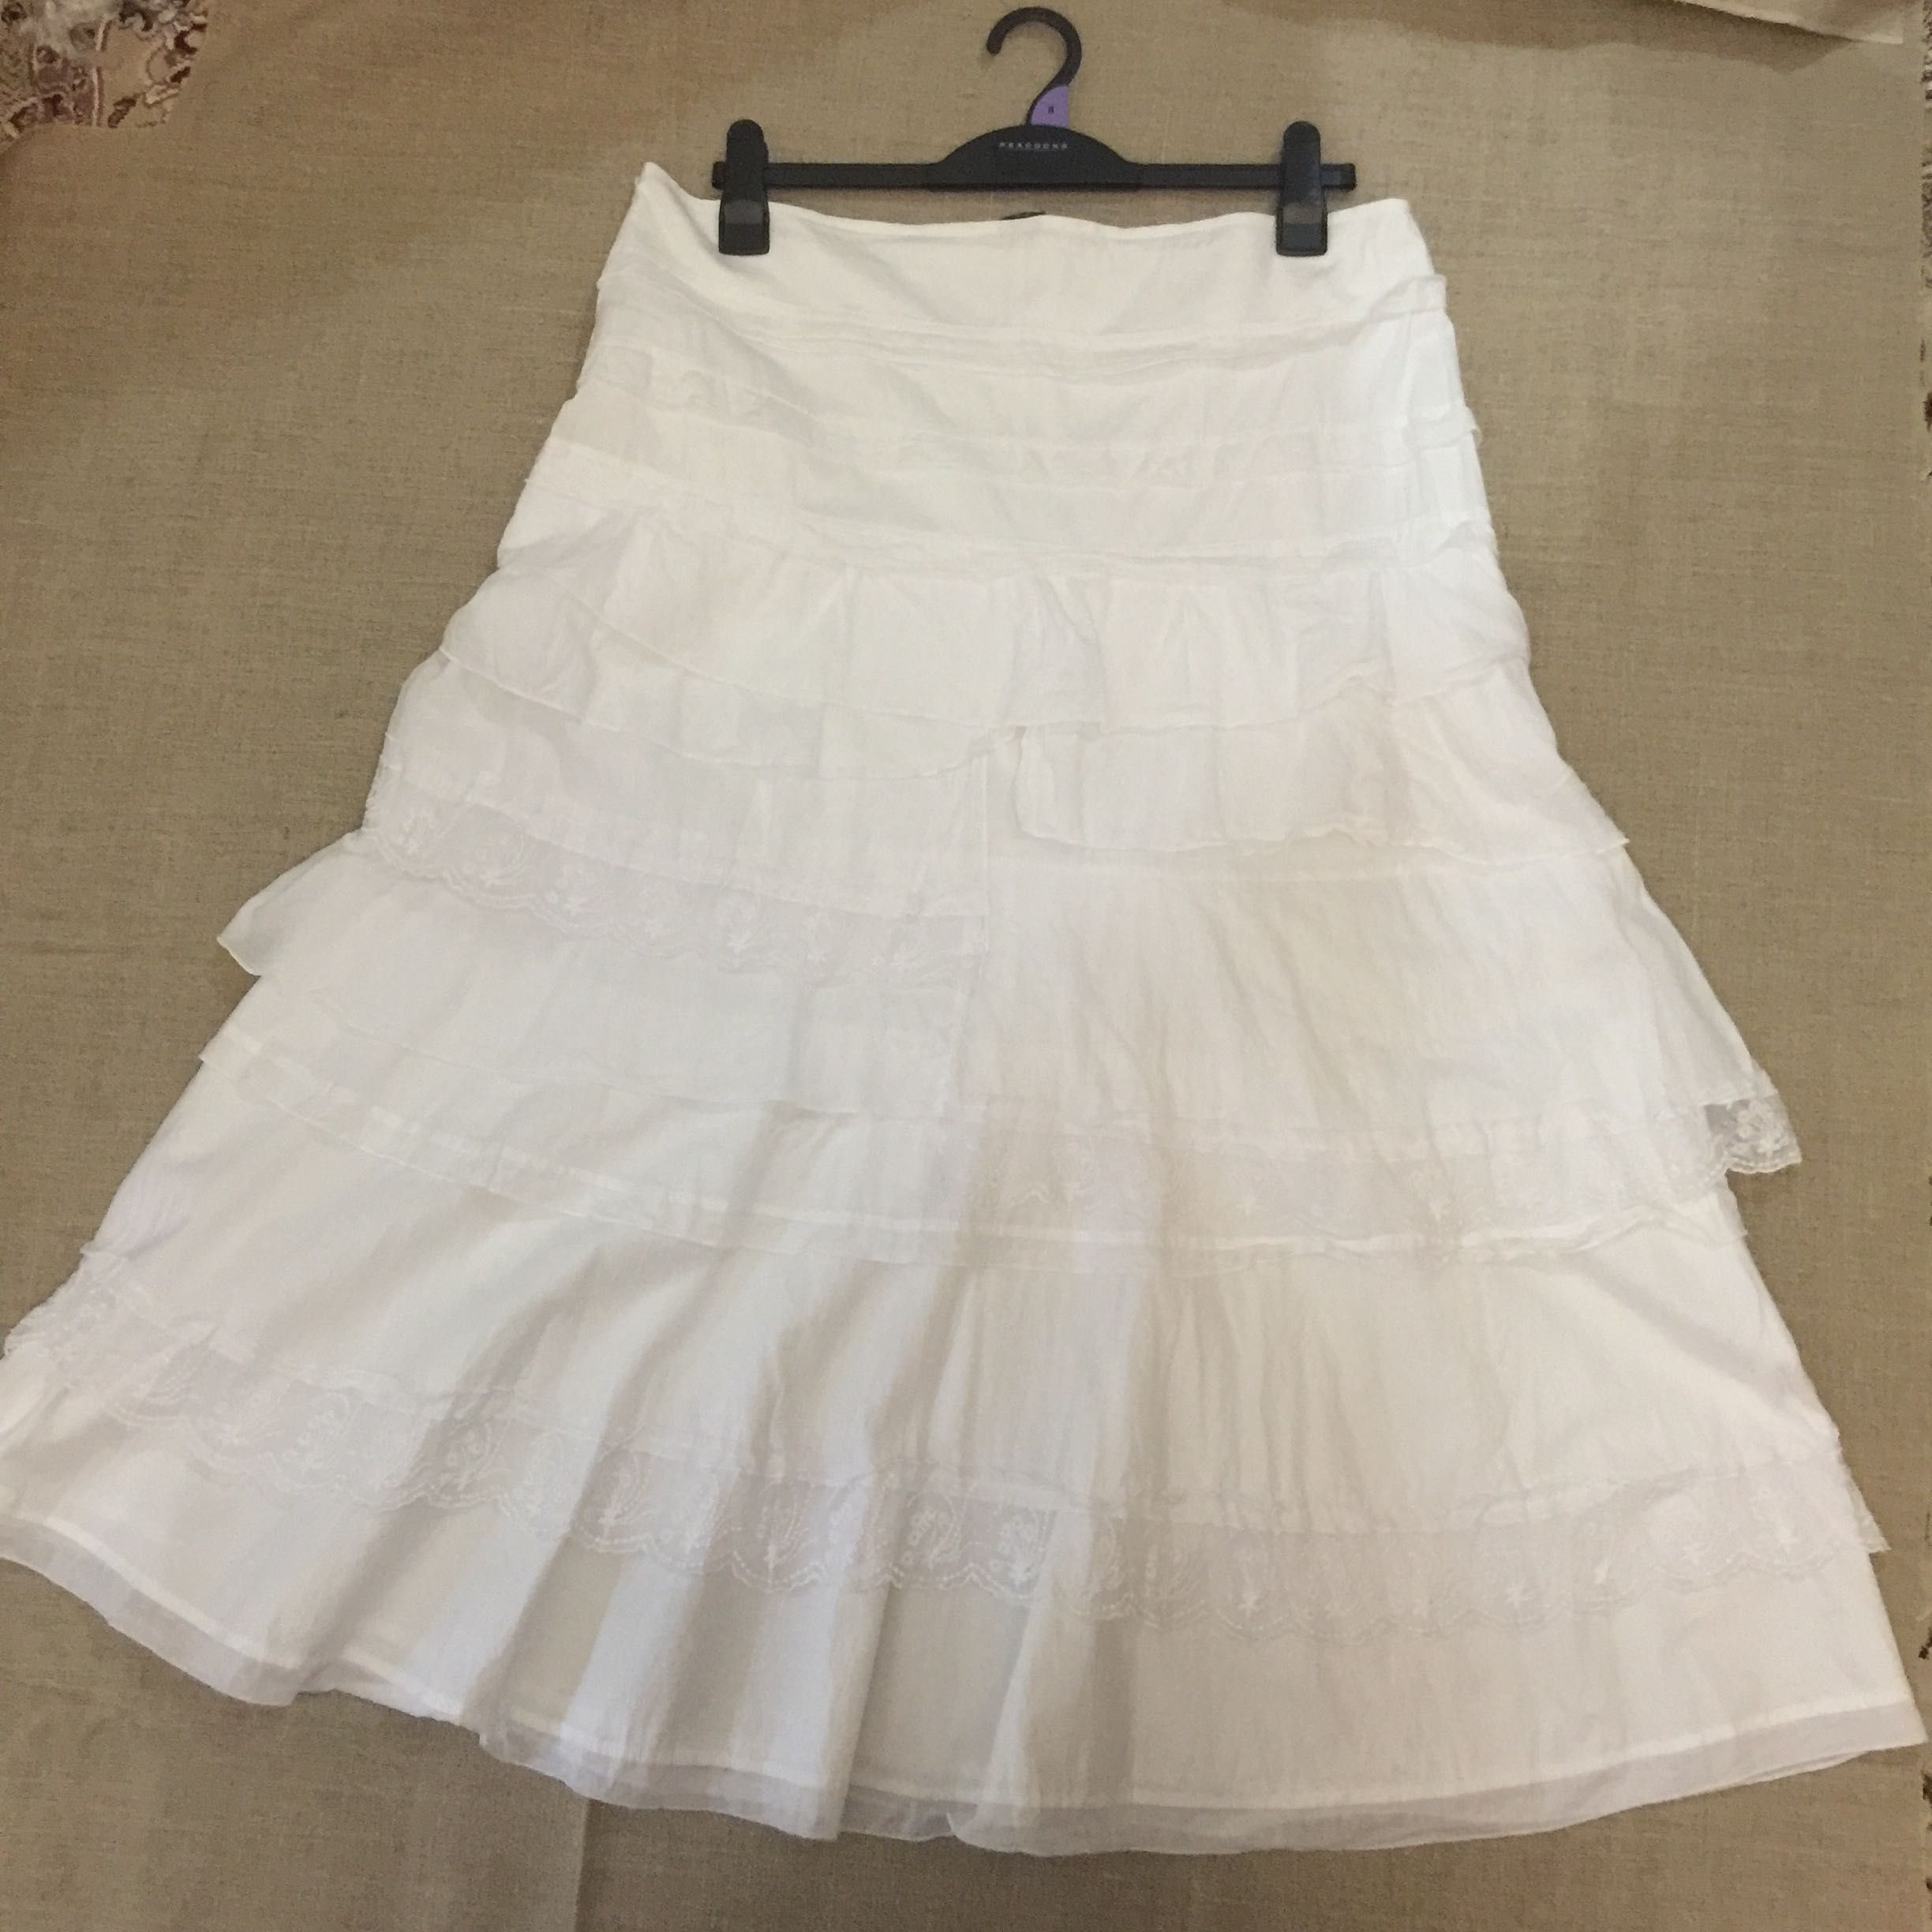 Роскошная белая летняя юбка макси SAO PAULO большого размера